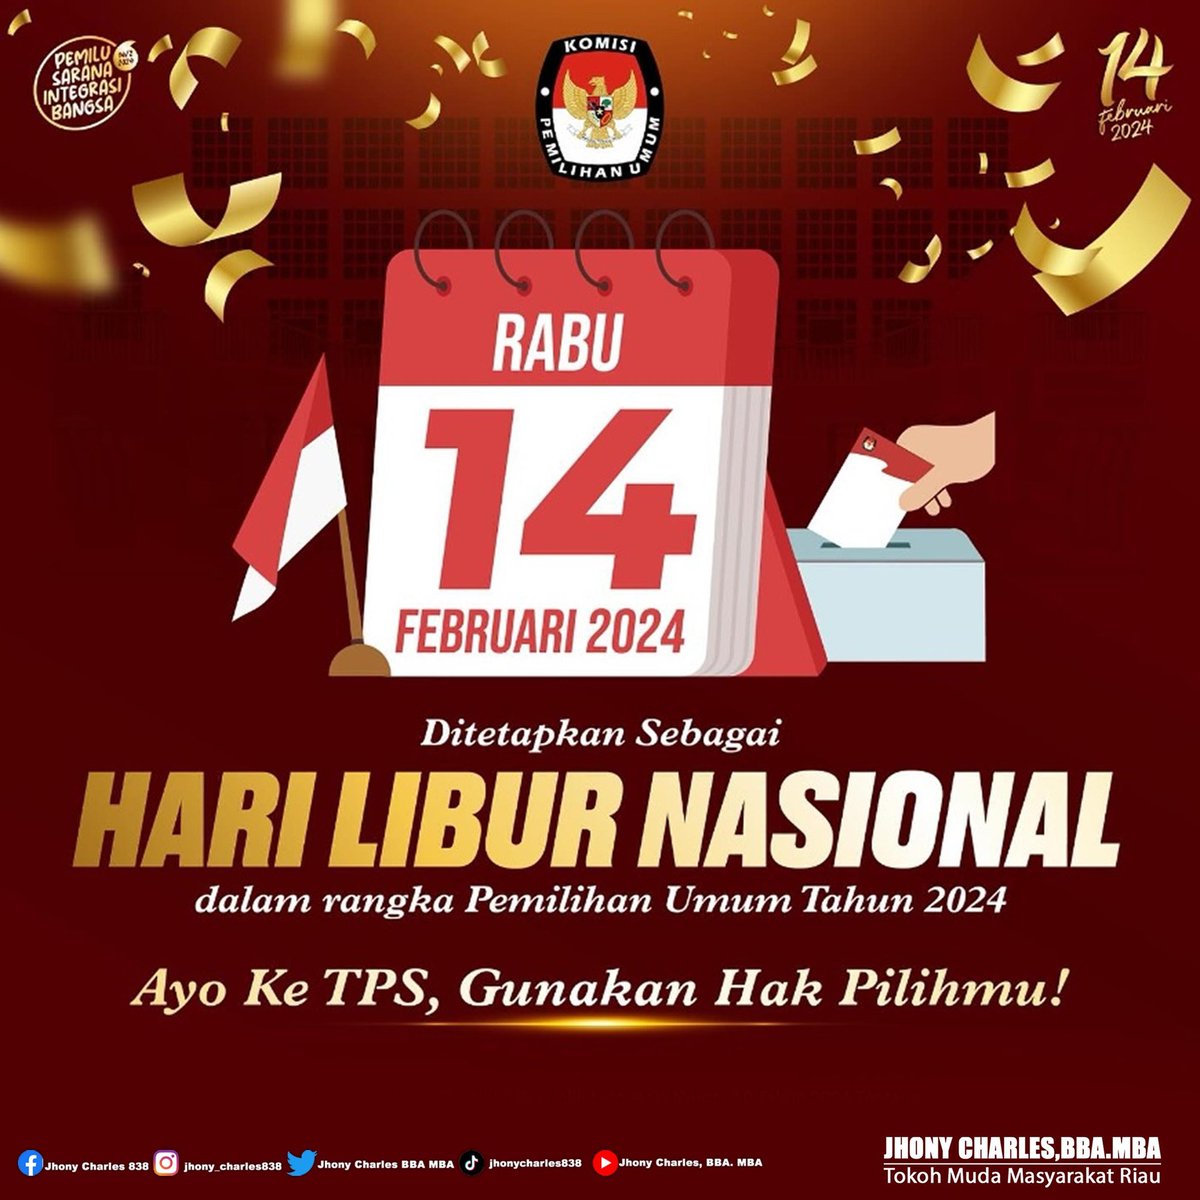 Ayo Sukseskan Pemilu 2024
GOLPUT BUKAN SOLUSI.!!!

Datang KE TPS 14 februari 2024
gunakan hak pilih mu.!

#pemuli2024 #pilpres2024 #pemilu #pilpres #pileg #indonesia
#indonesia #JC #Indonesia #Riau #RokanHilir #KamiAnakRiau #JhonyCharles838